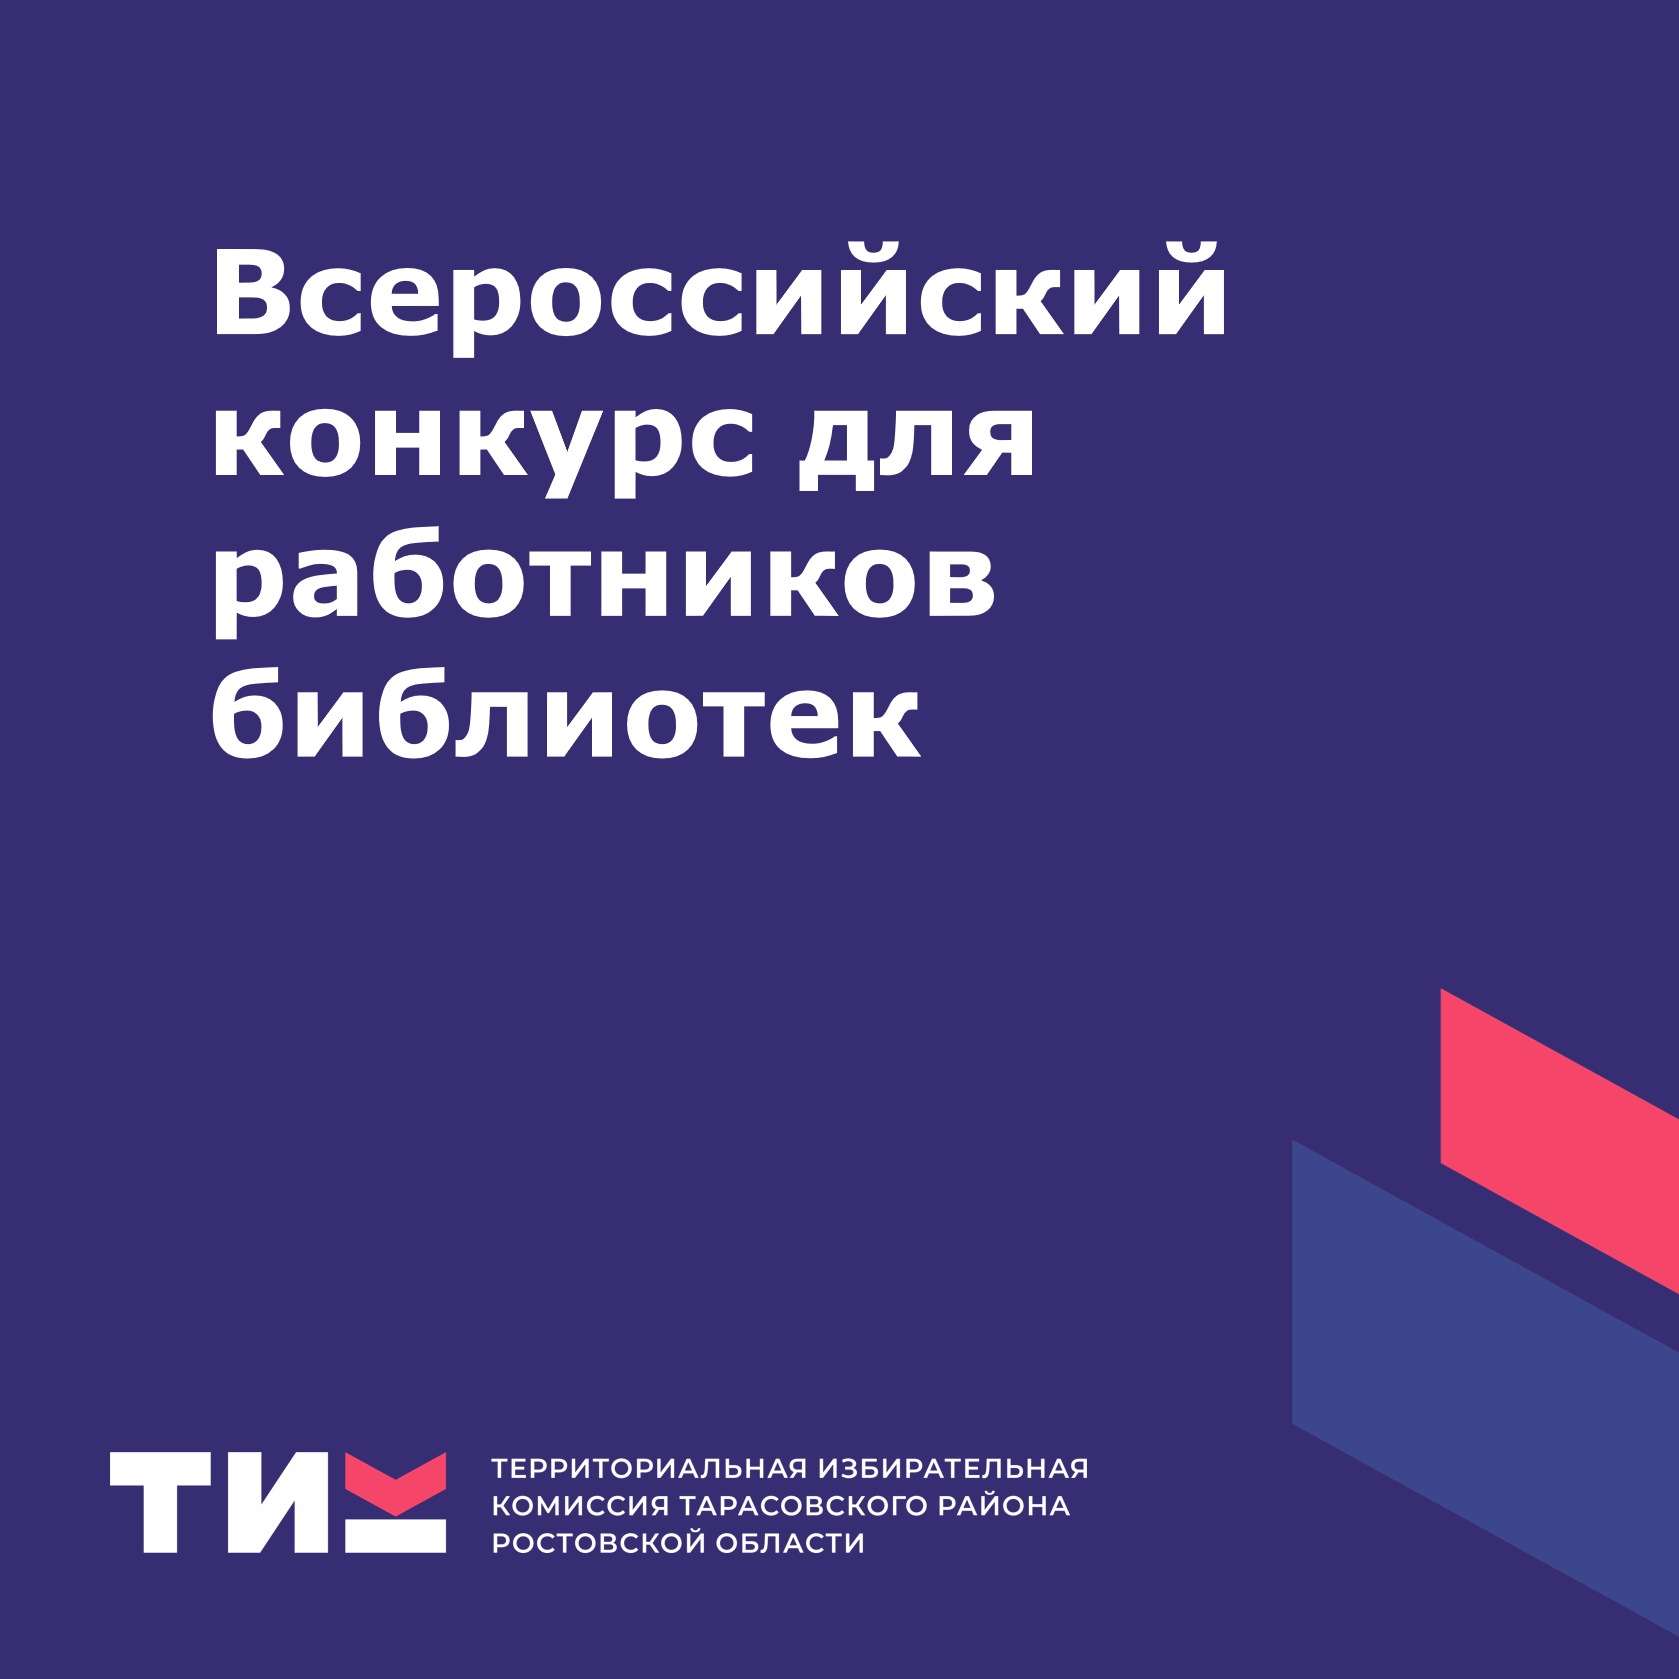 Всероссийский конкурс для работников библиотек